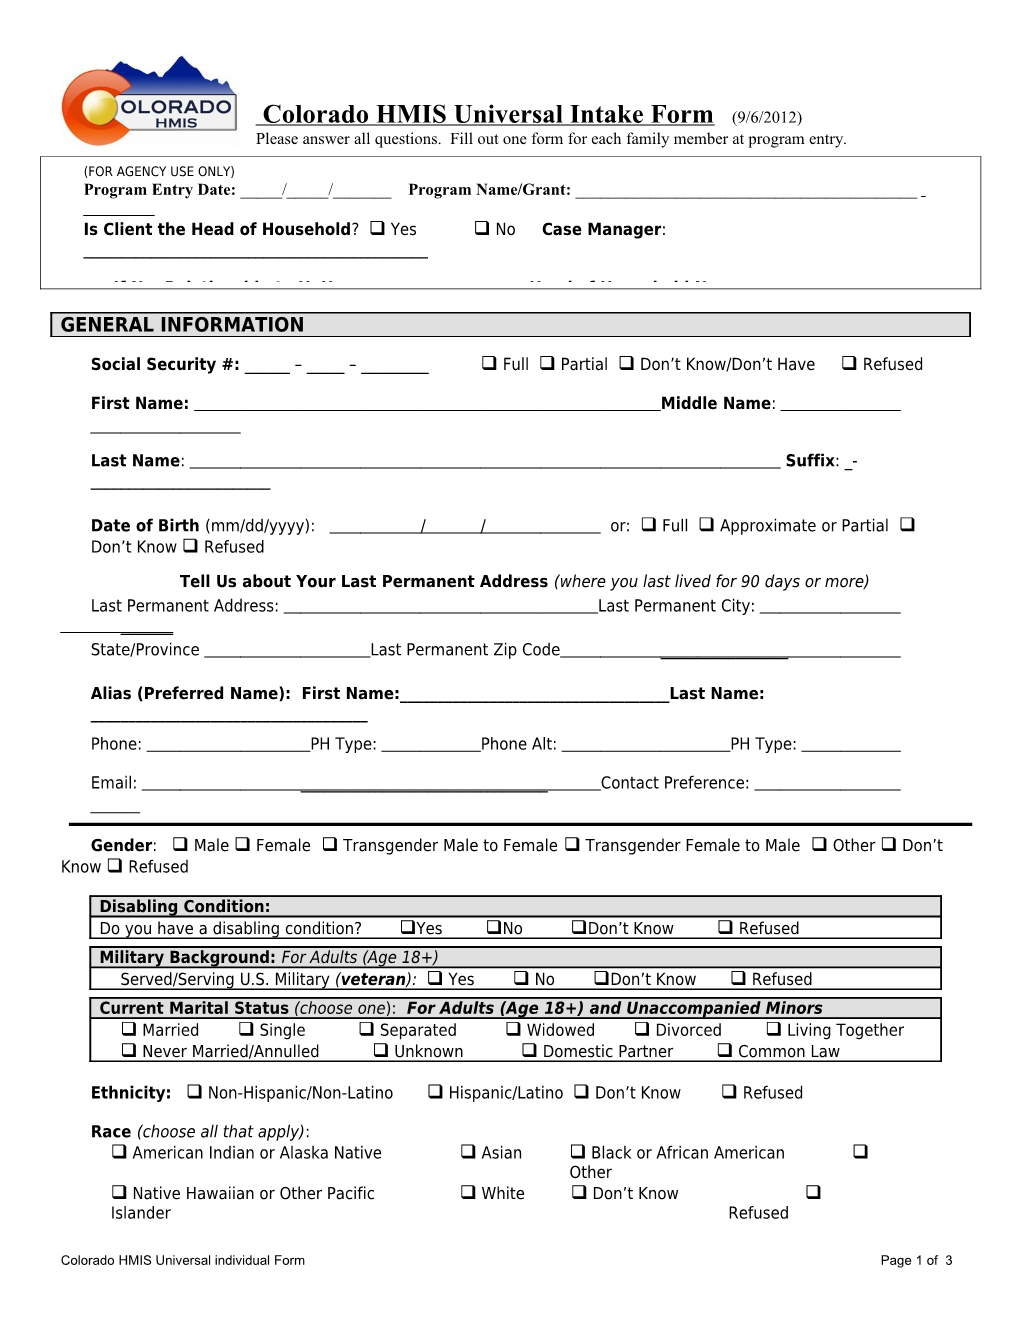 Colorado HMIS Universal Intake Form (9/6/2012)